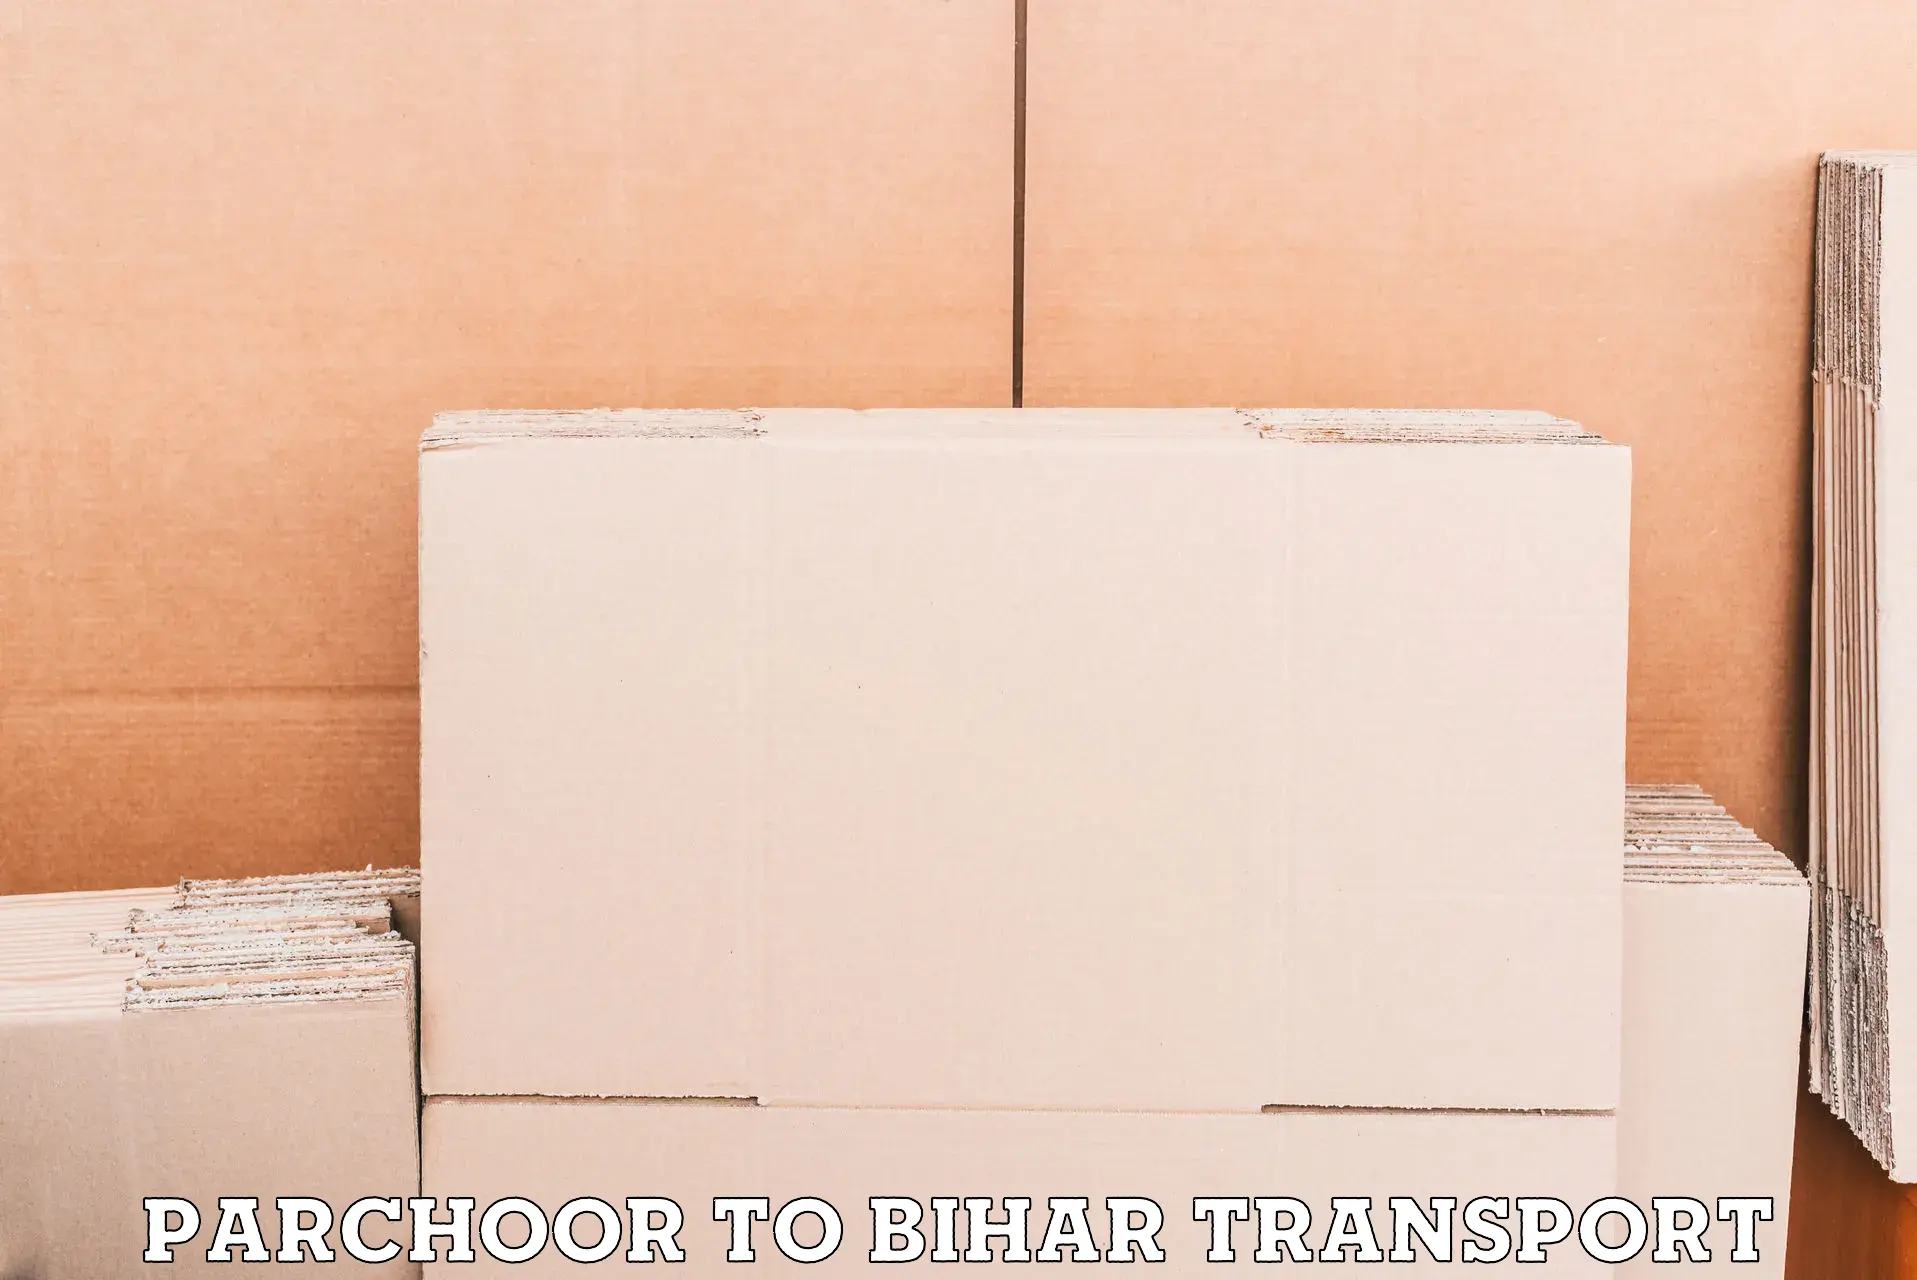 Commercial transport service Parchoor to Bihta